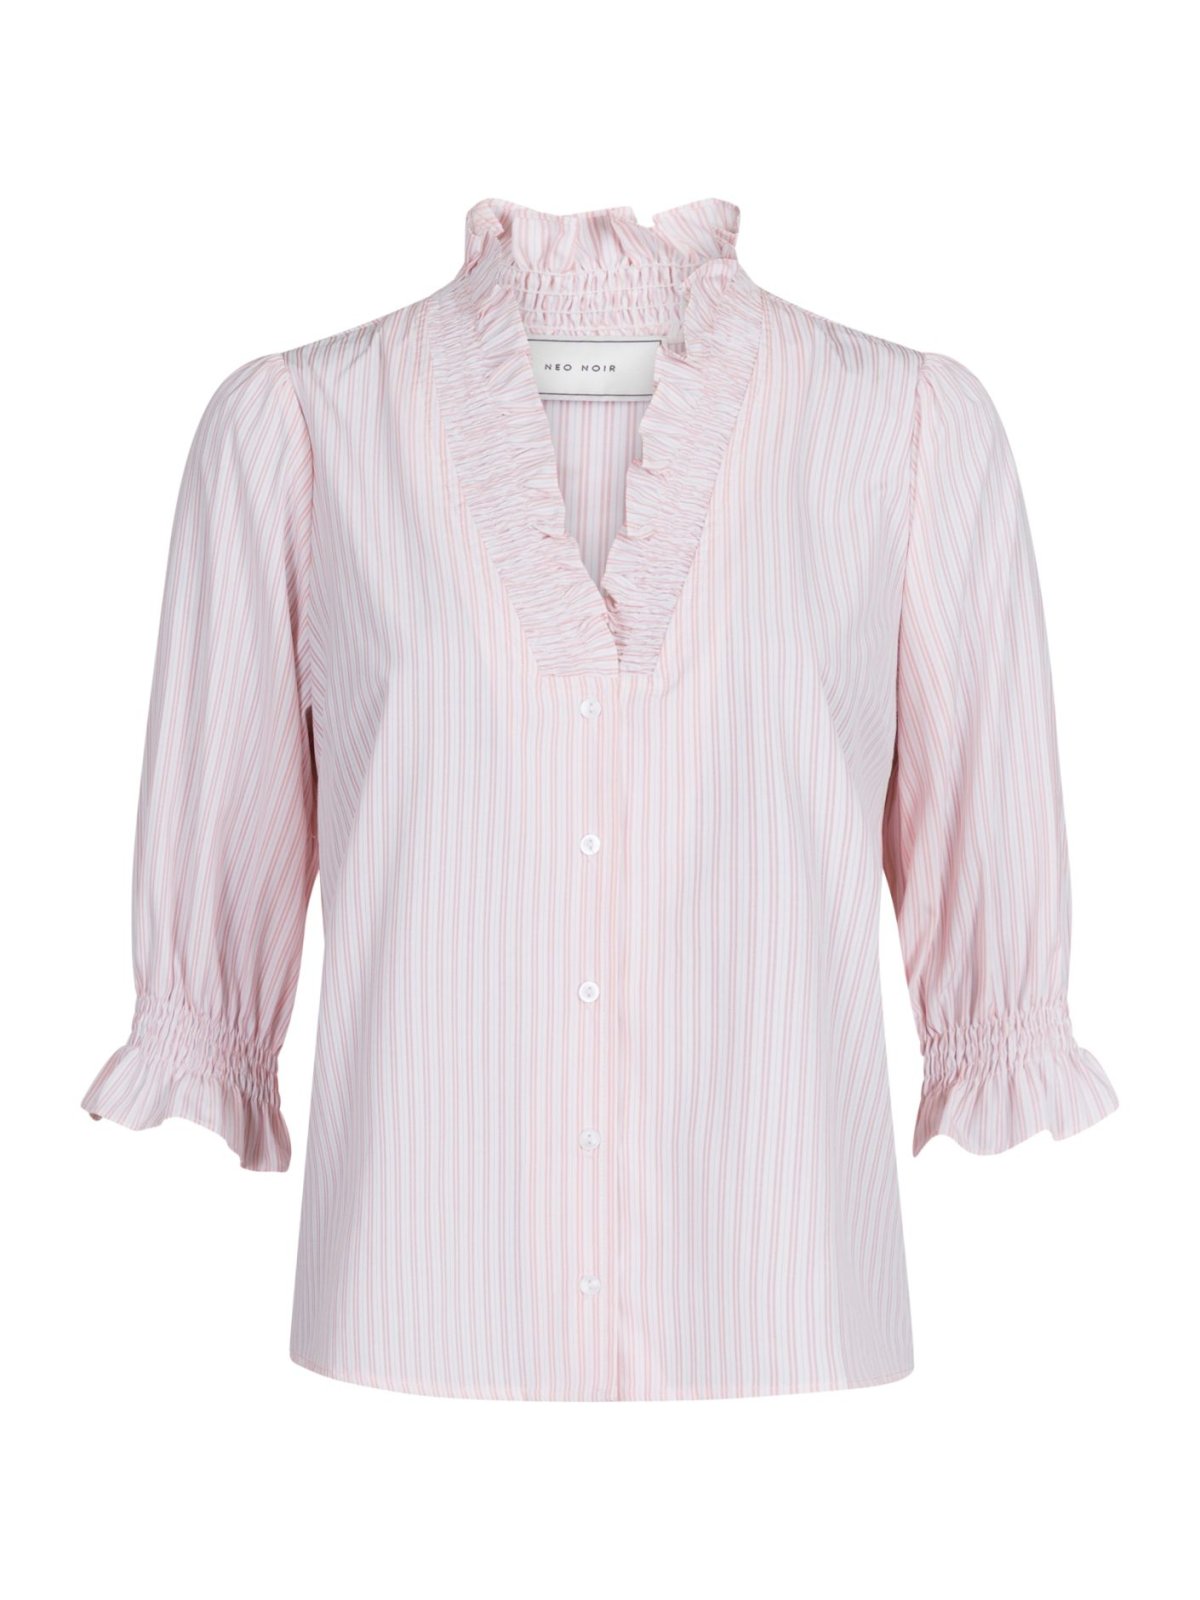 Neo Noir Briony stripe blouse - light pink - NYHEDER VOIGT